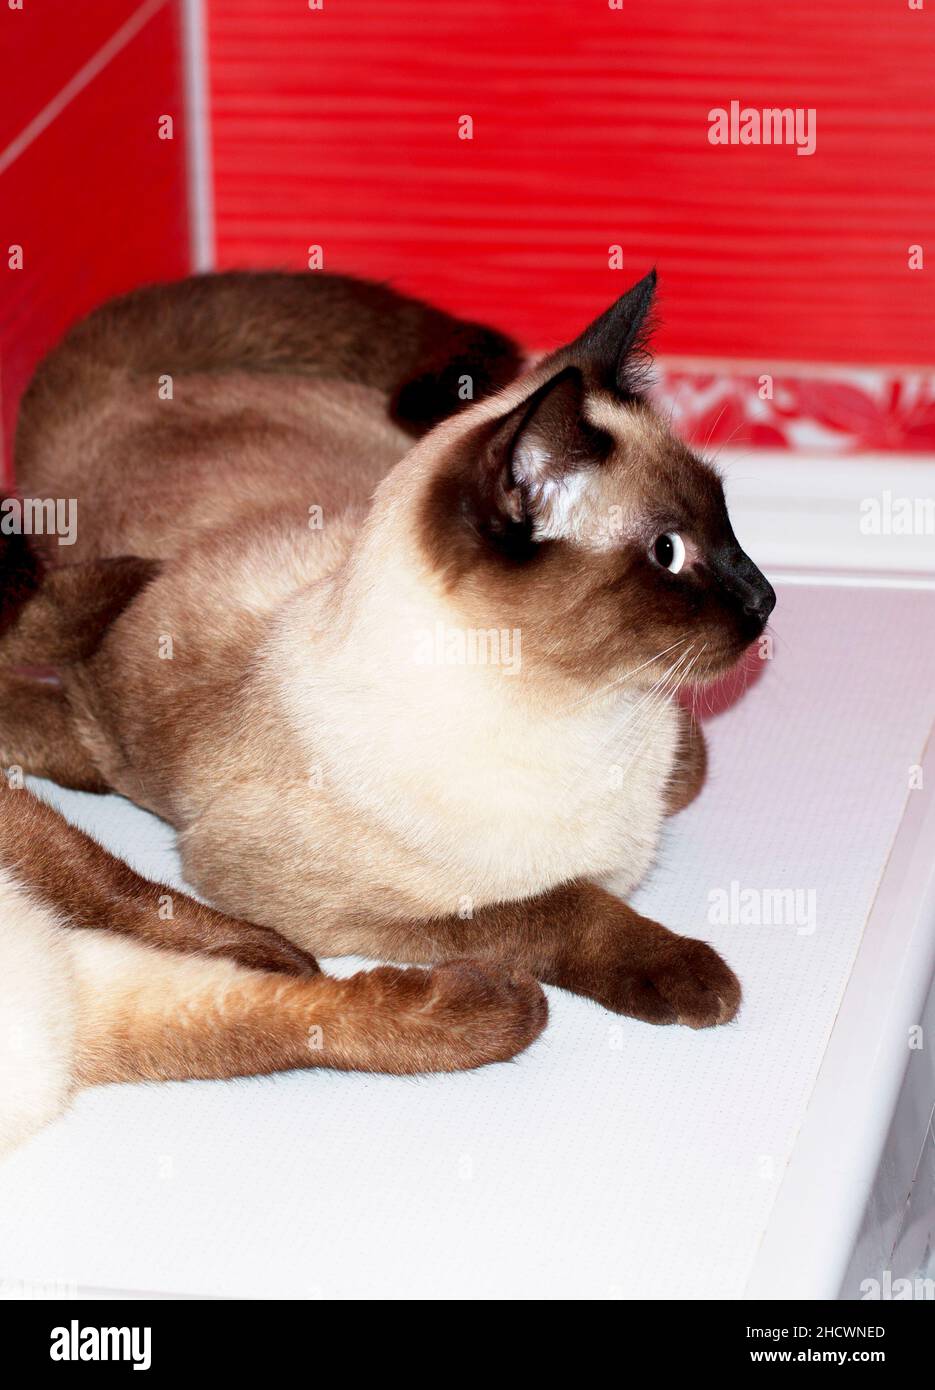 Bellissimo gatto siamese si trova in un bagno rosso, gatti, gattini e gatti in casa, animali domestici le loro foto e la loro vita Foto Stock